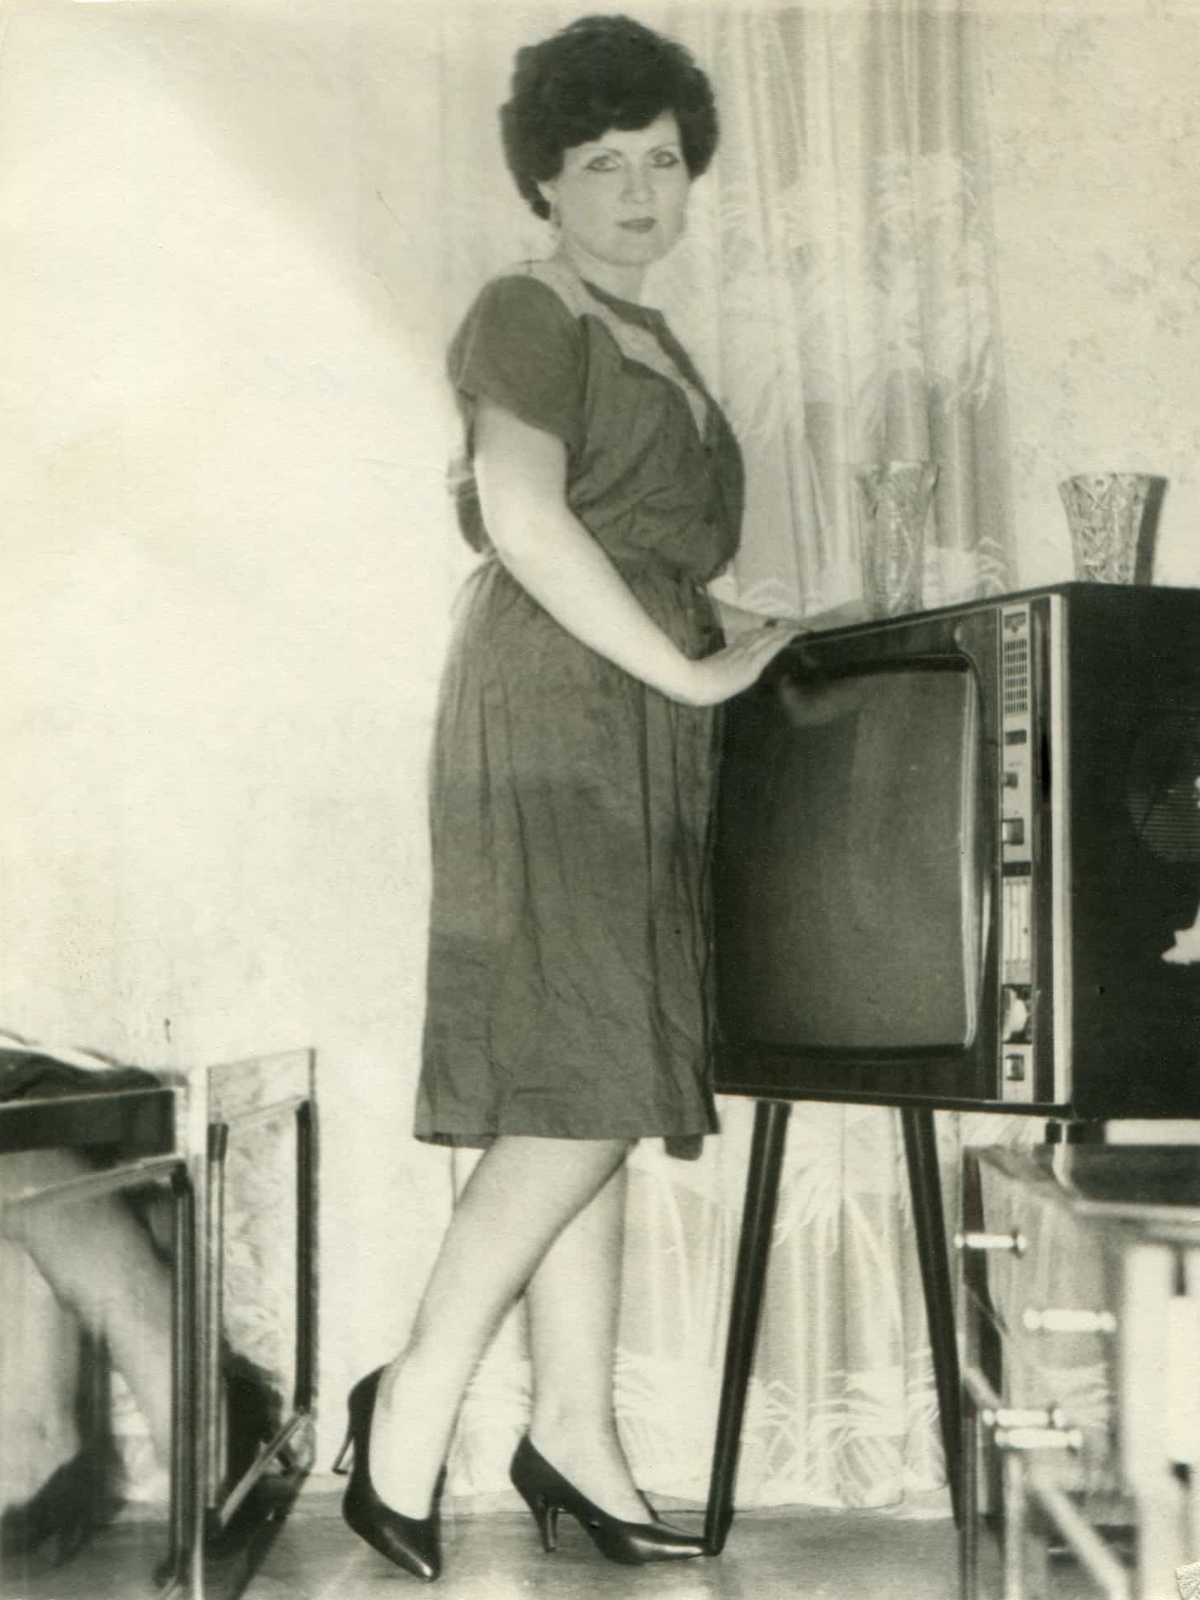 Ретро-снимки советских людей, позирующих у своих первых телевизоров